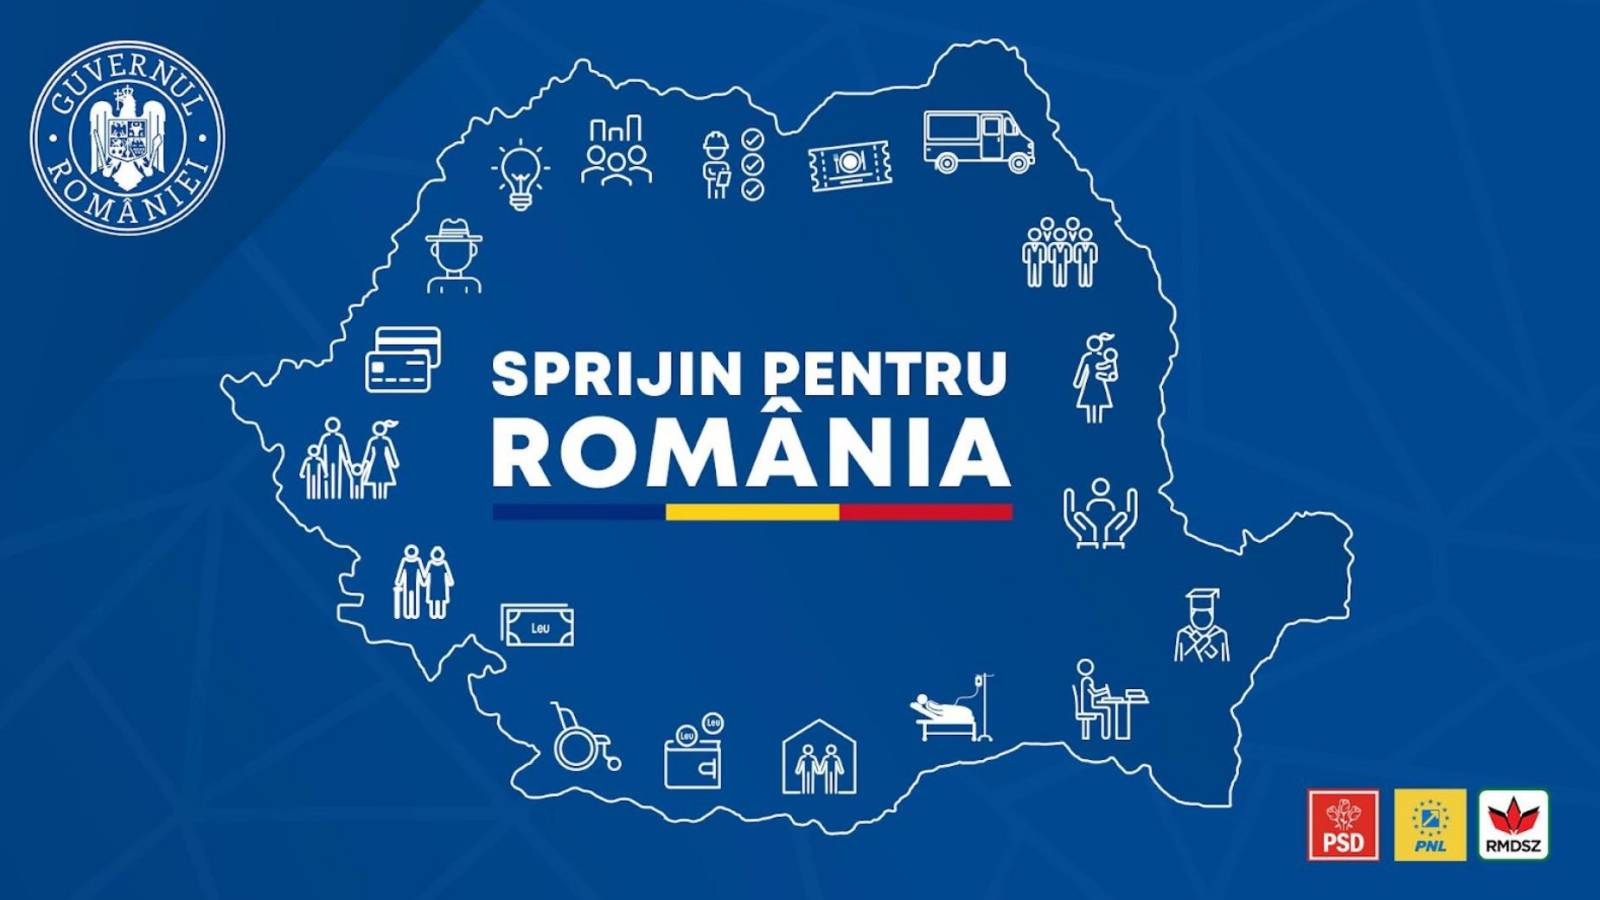 Pacchetto di misure economiche e sociali del governo per la Romania